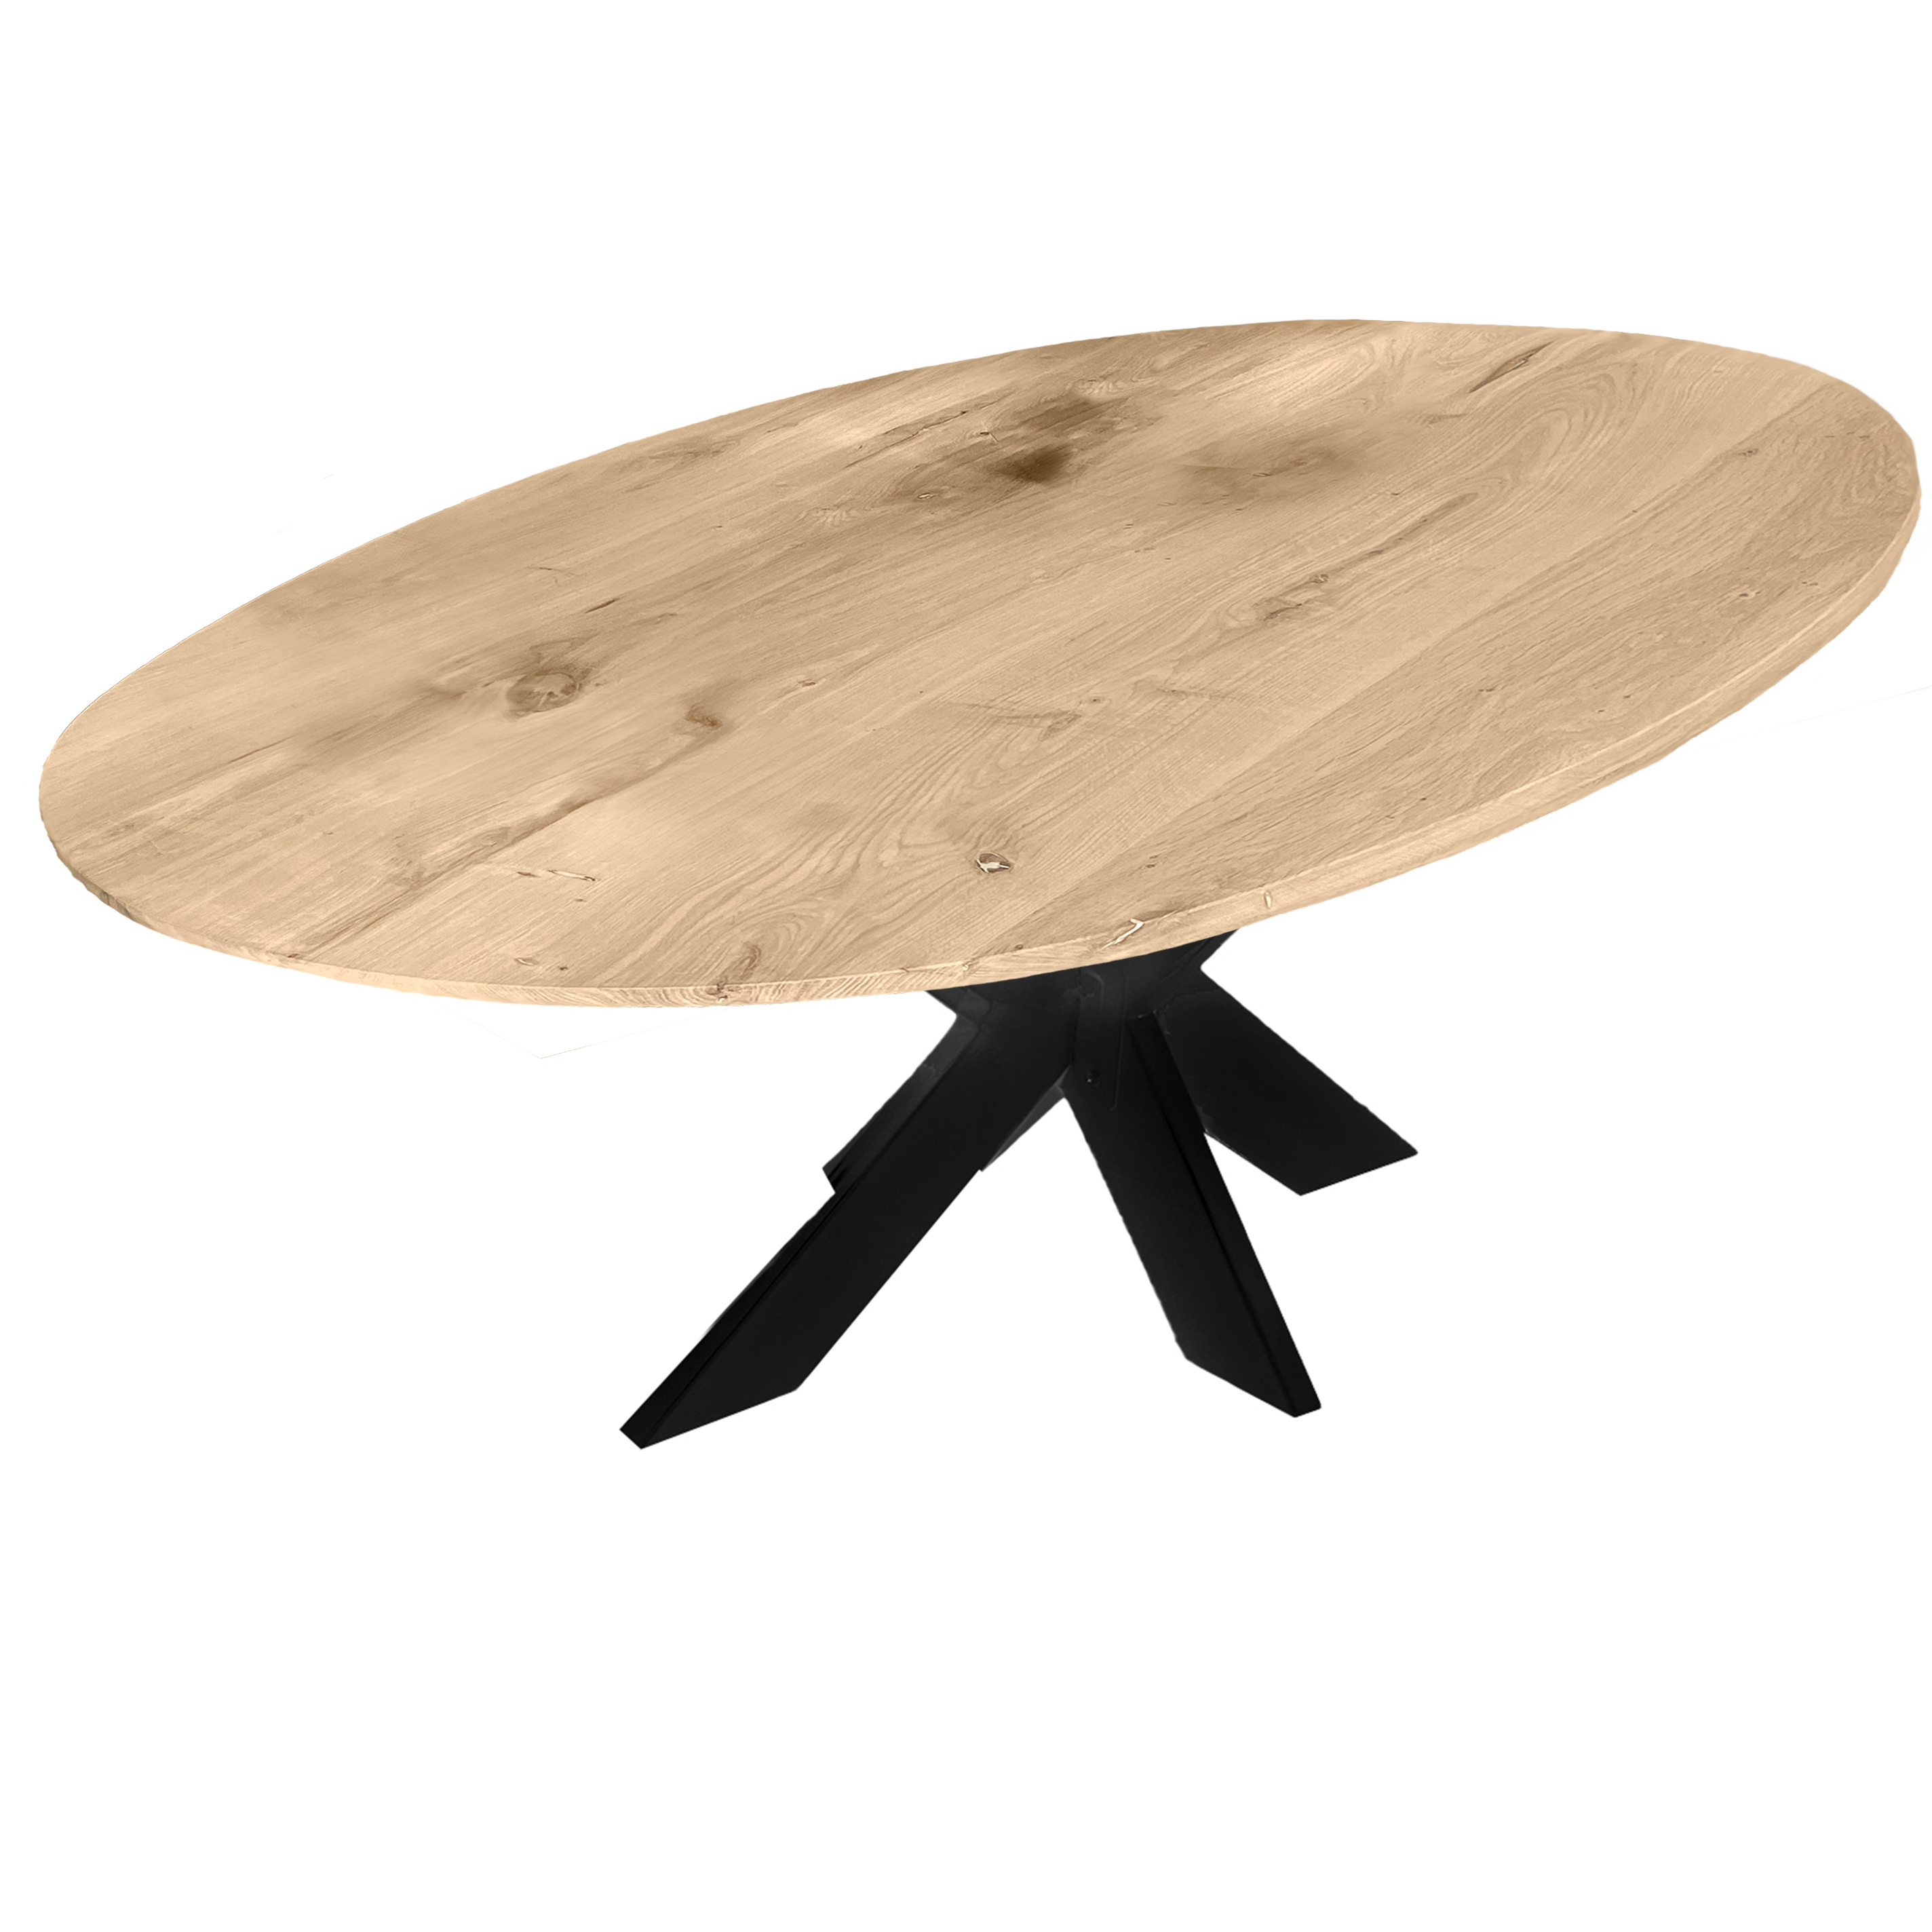  Tischplatte Wildeiche oval - 2,5 cm dick (1-Schicht) - XXL Lamellen (14-20 cm breit) - Asteiche (rustikal) - Tischplatte ovale / ellipse Eiche - verleimt & künstlich getrocknet (HF 8-12%) - verschiedene Größen